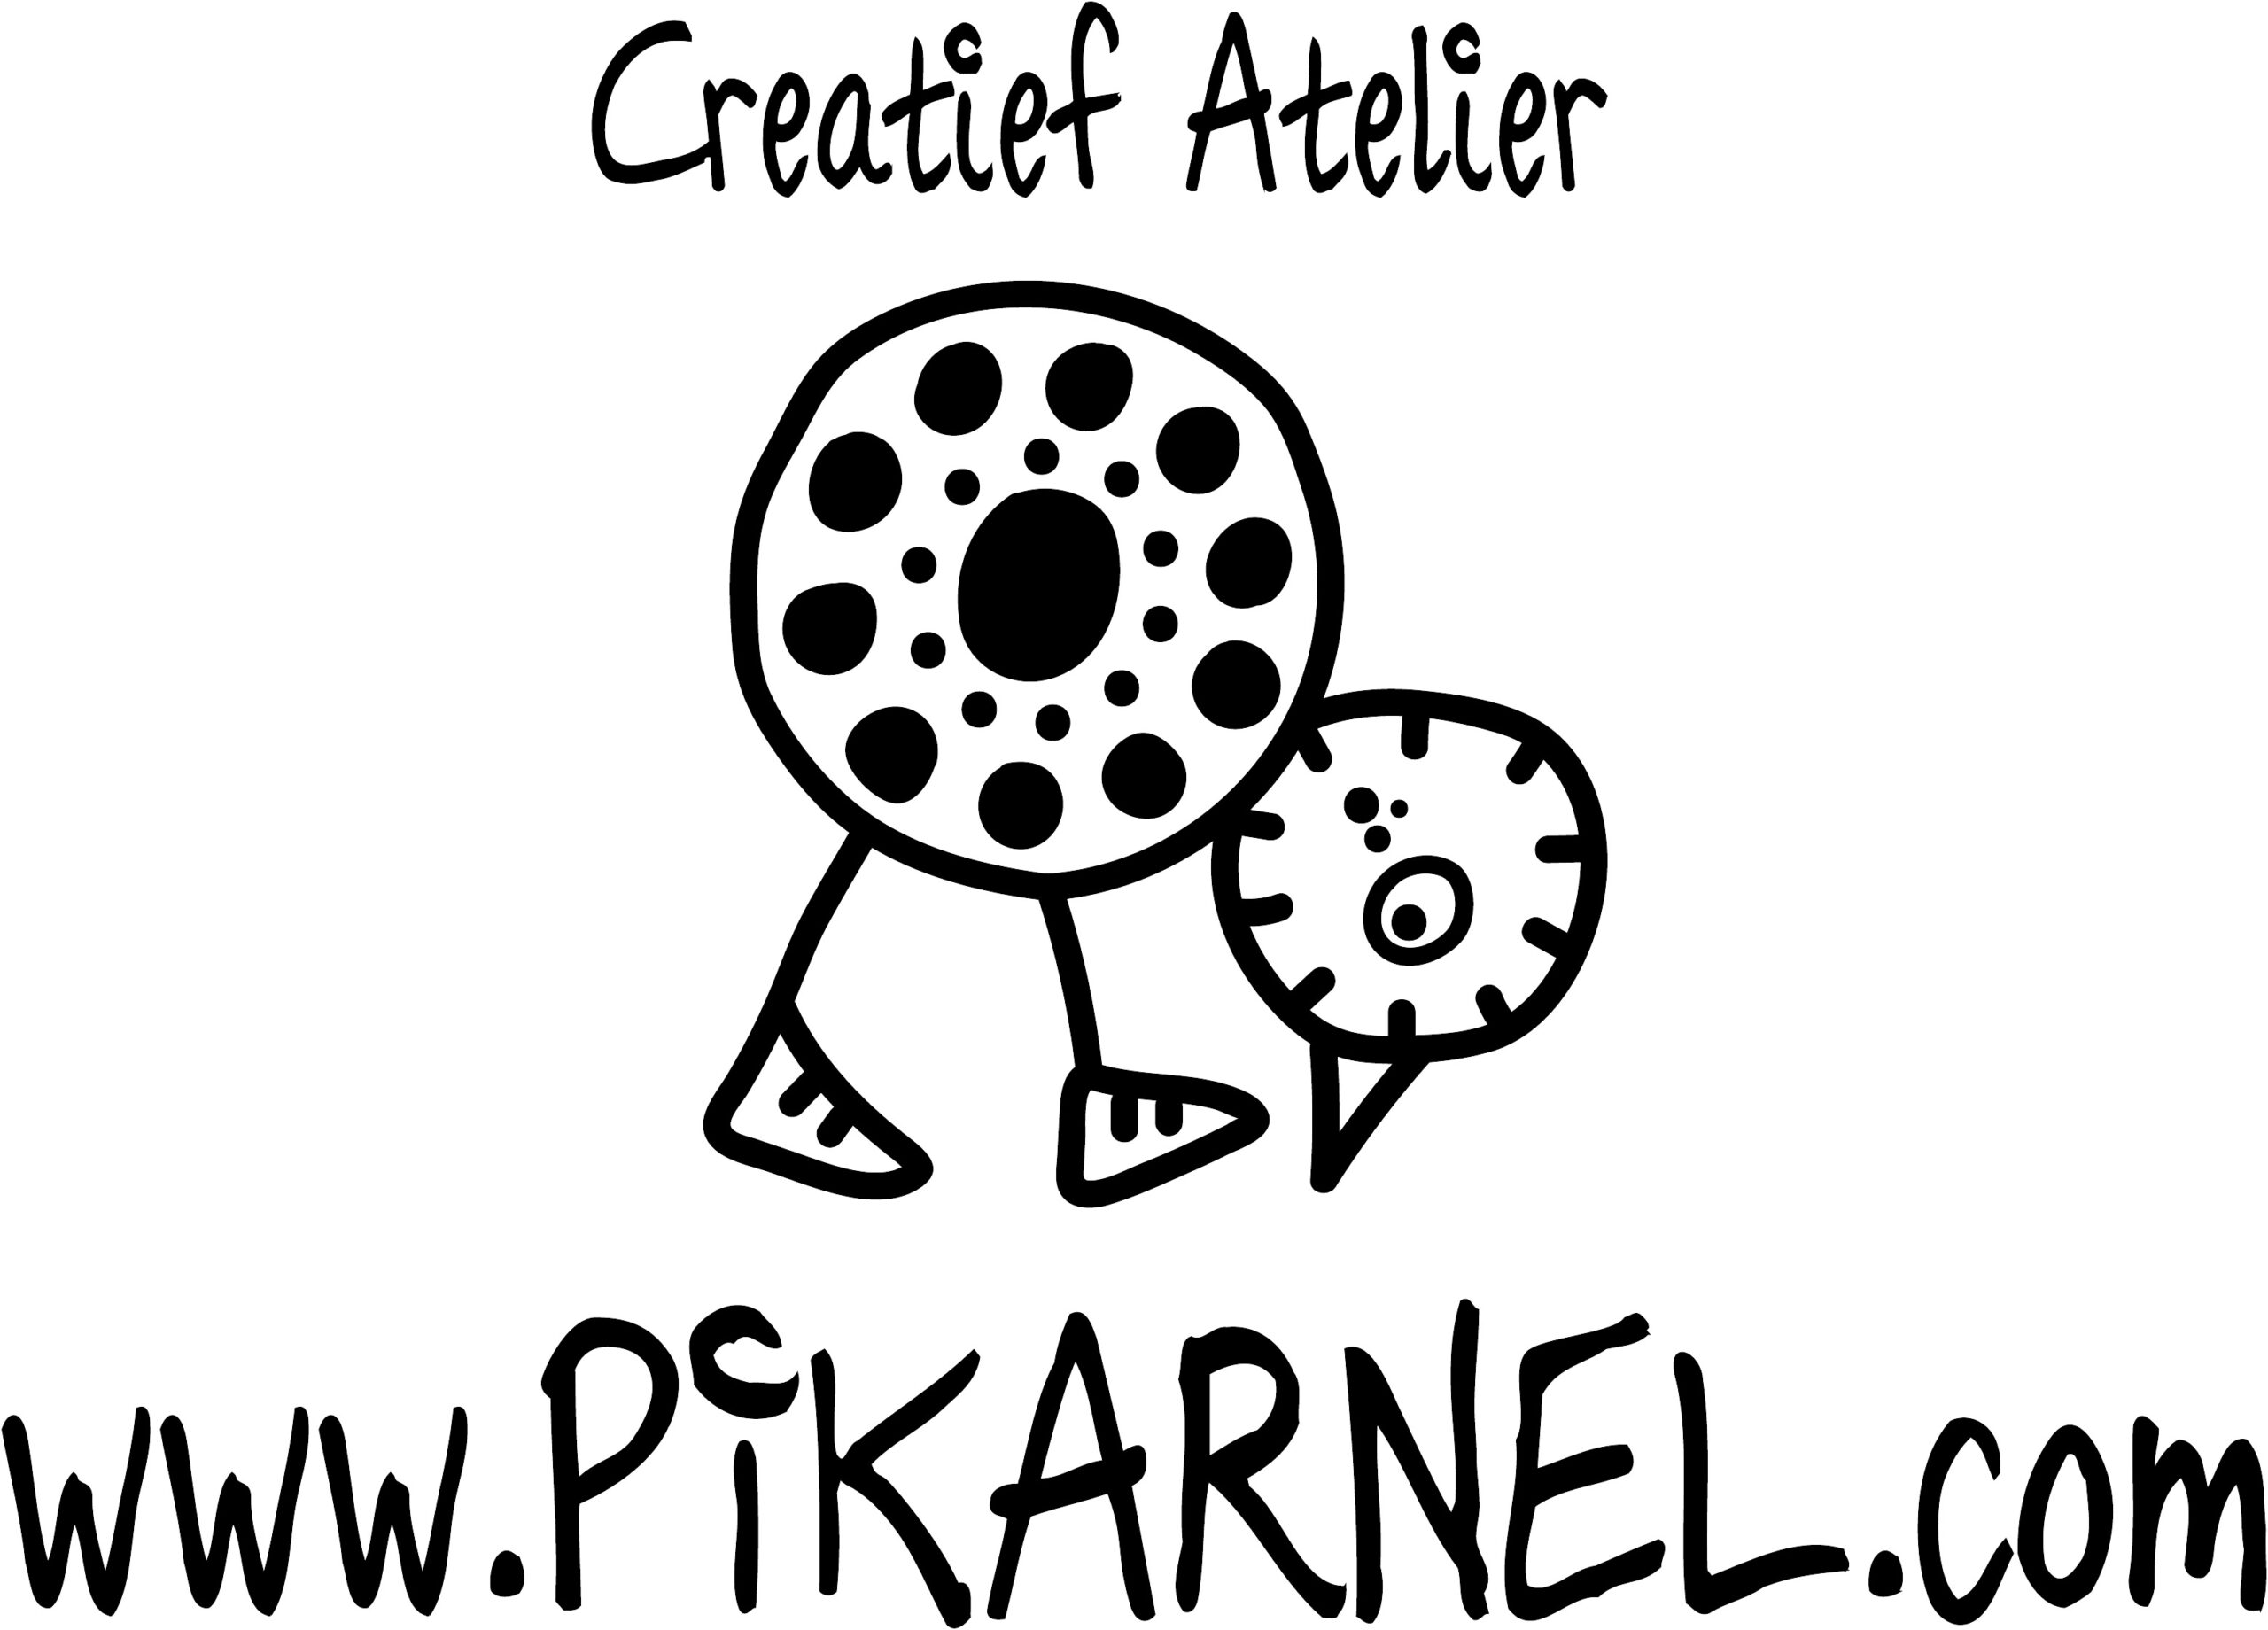 Pikarnel logo shirts - zwart 1